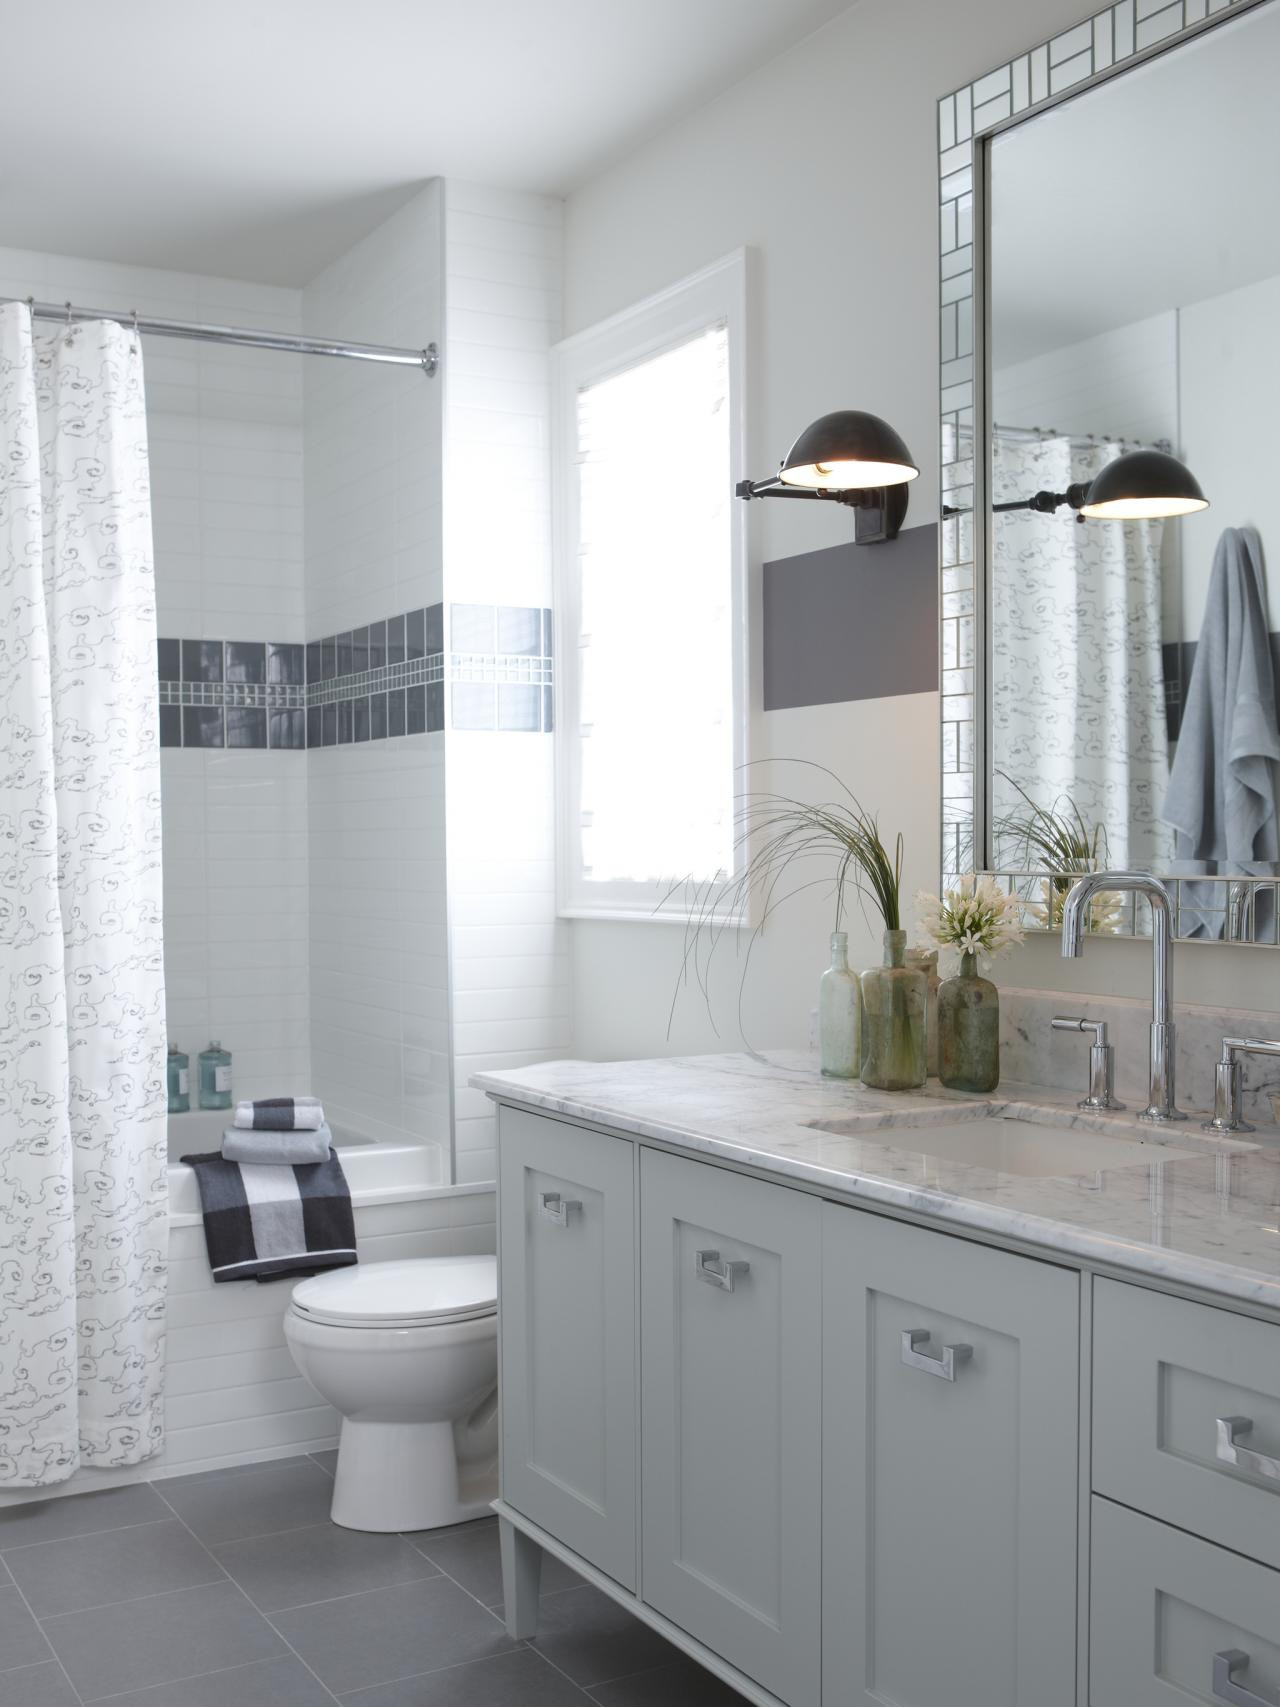 Best Tile For Bathroom Shower
 5 Tips for Choosing the Right Bathroom Tile